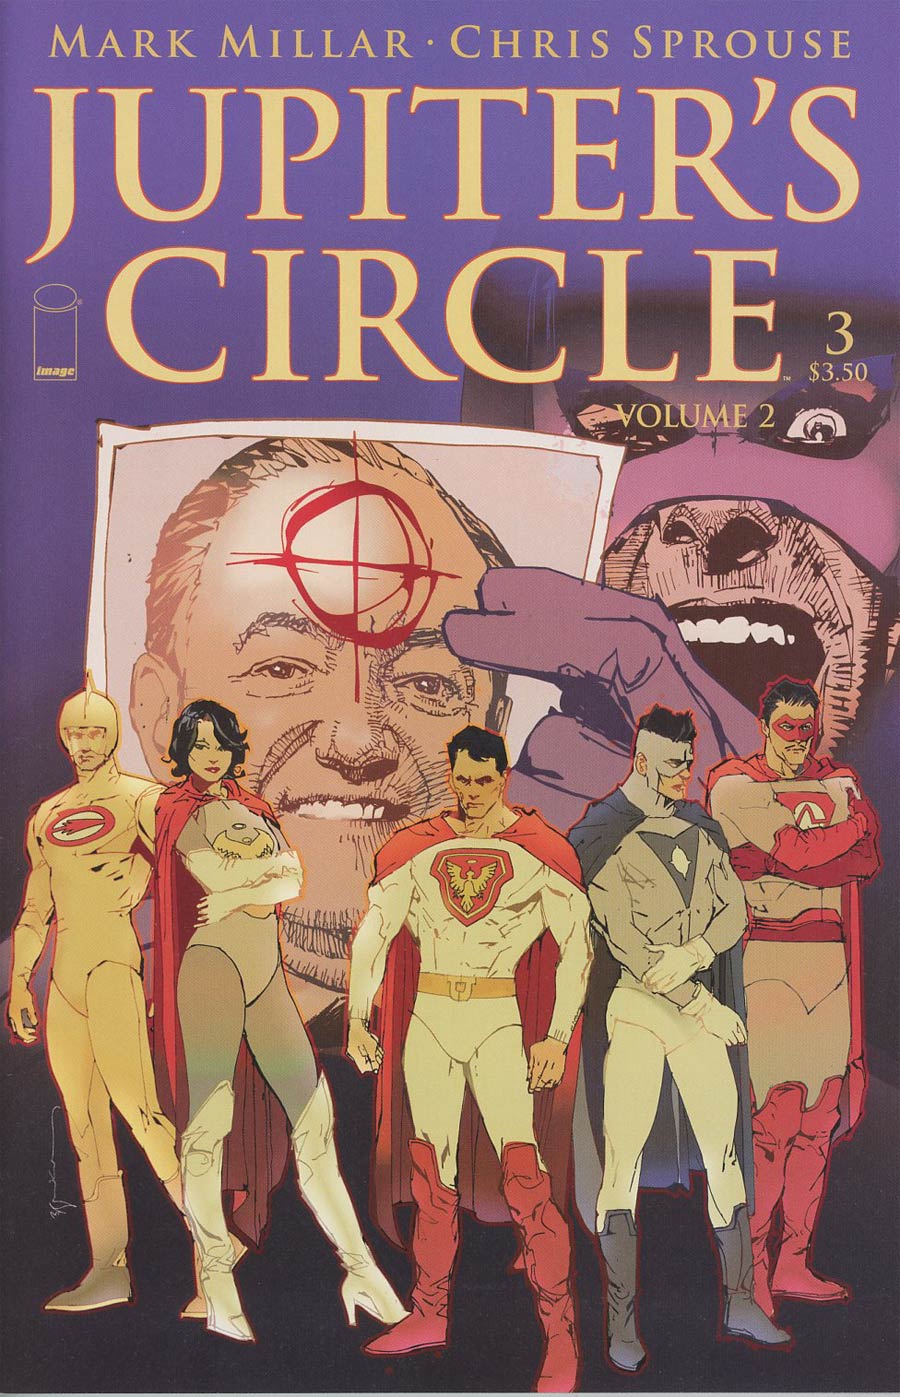 Jupiters Circle Vol 2 #3 Cover A Bill Sienkiewicz